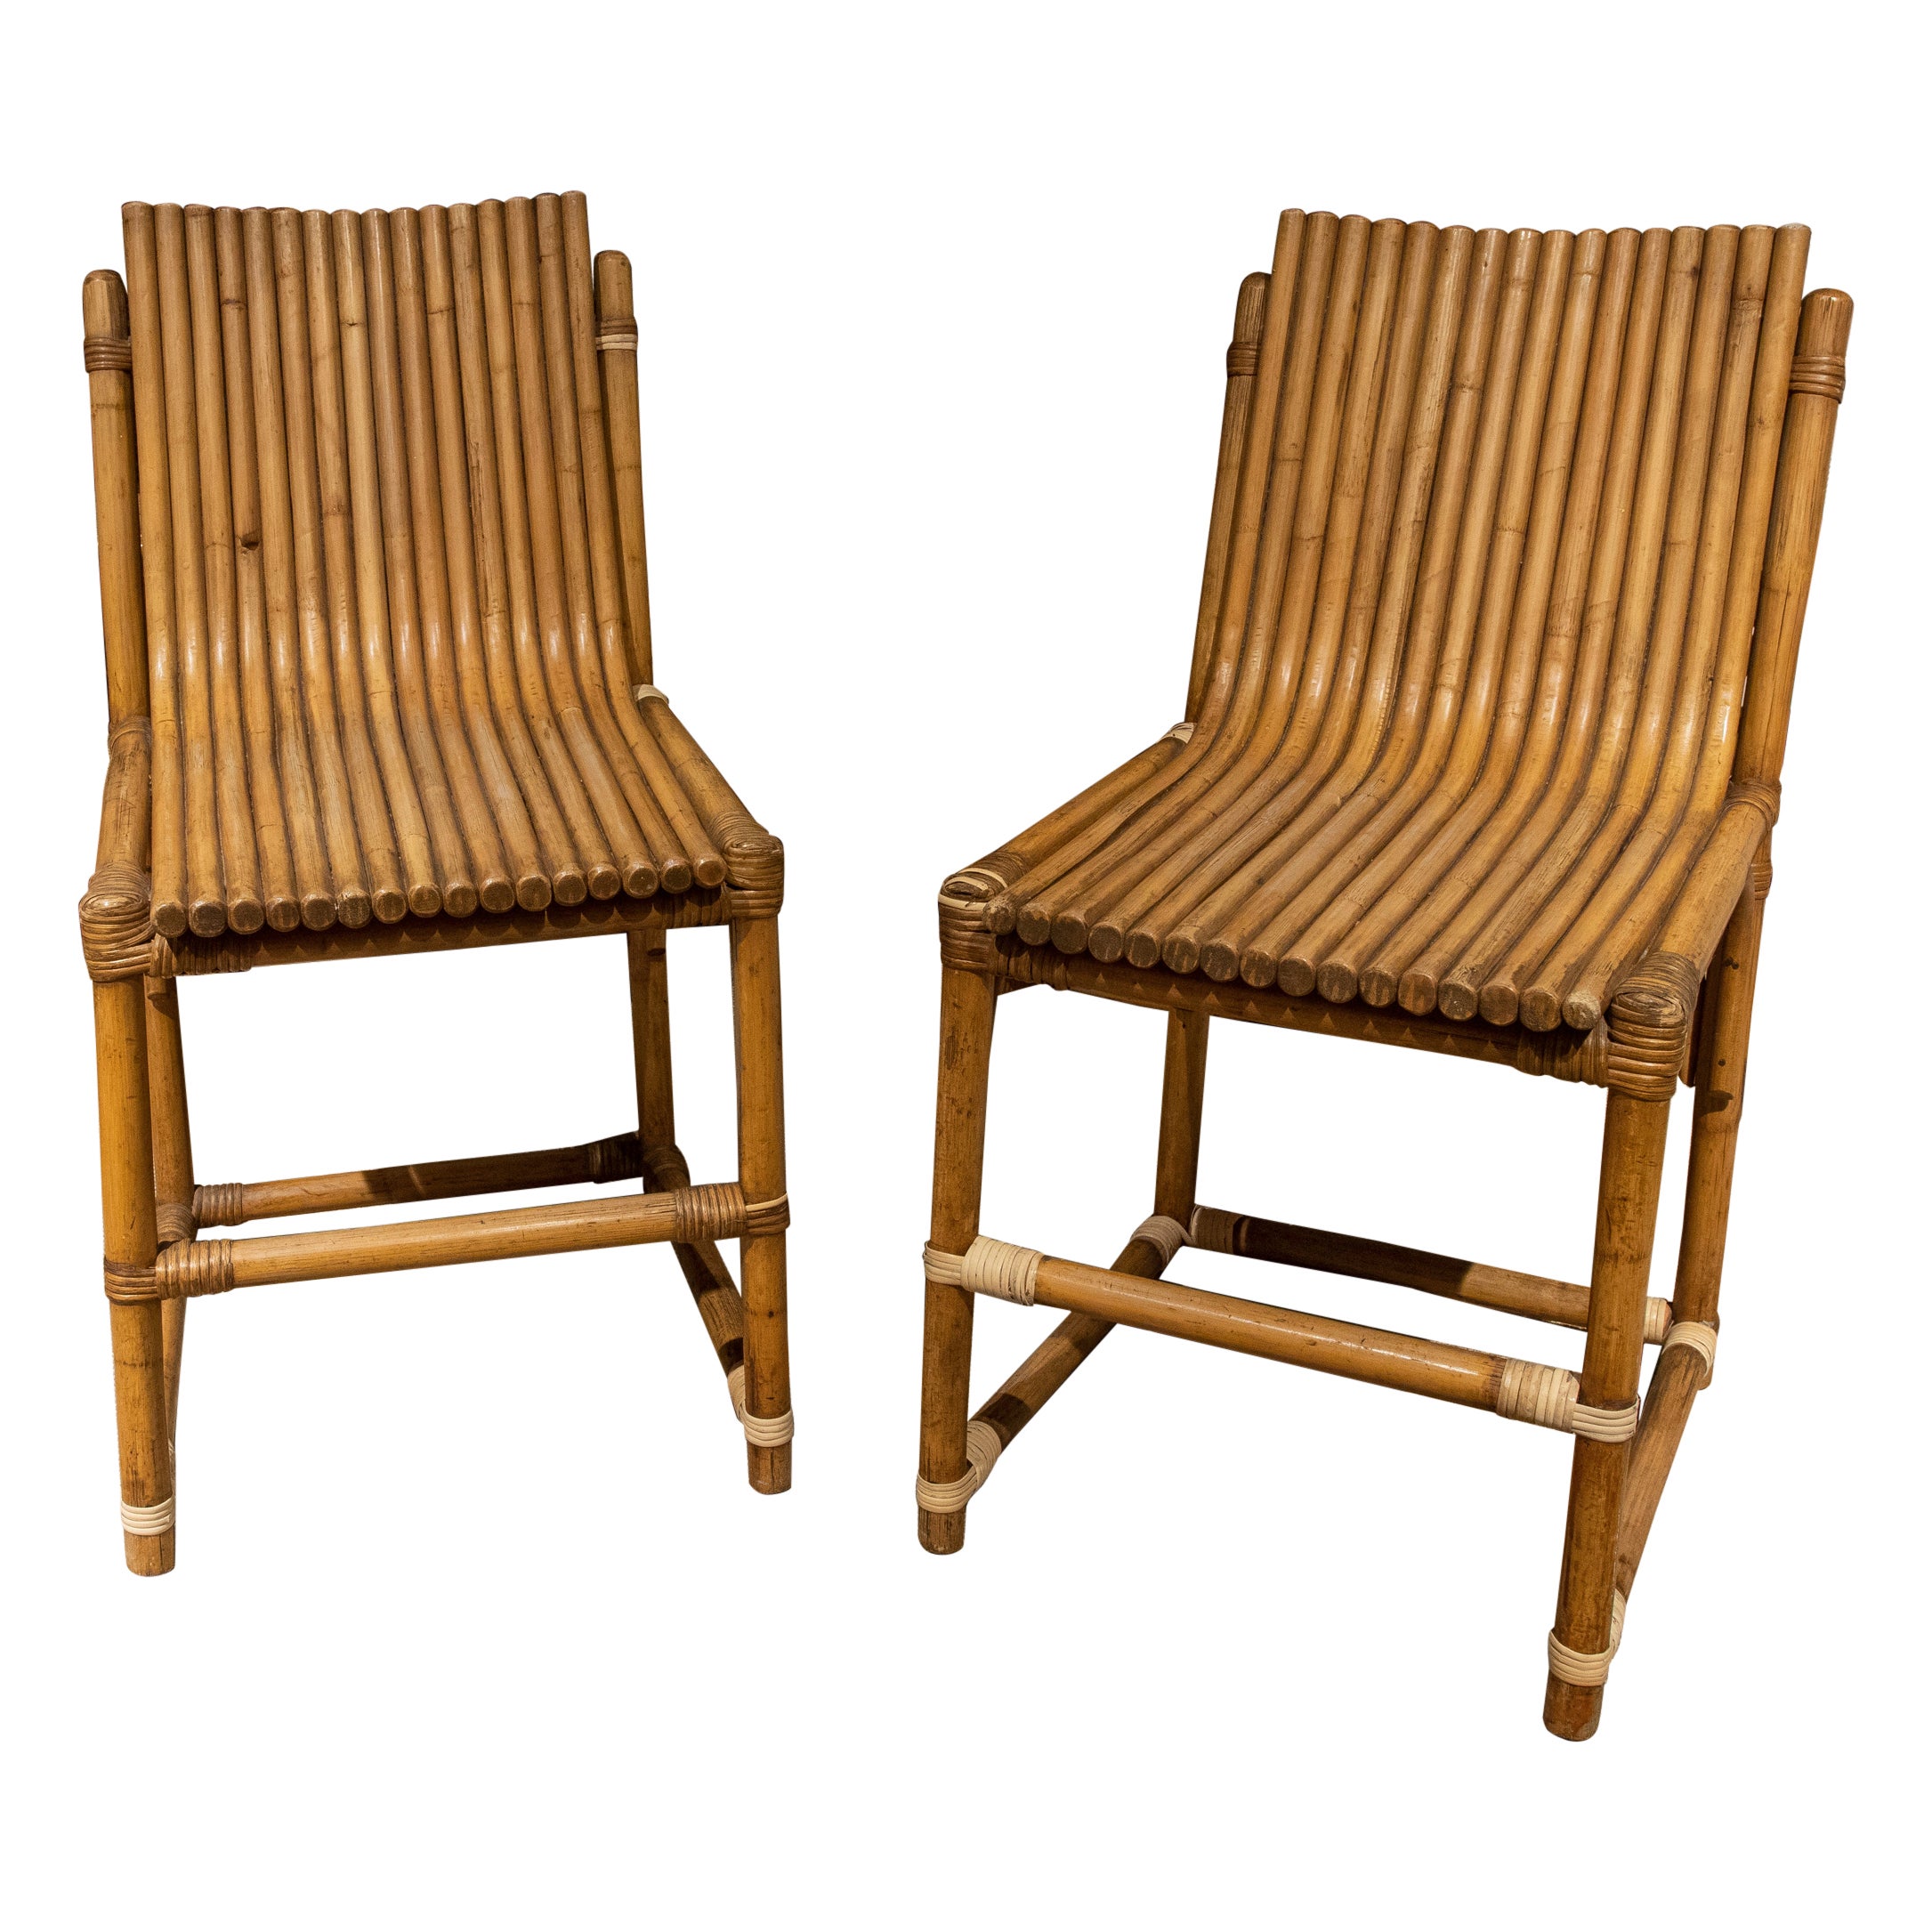 1950s, Spanish Pair of Bamboo Chairs